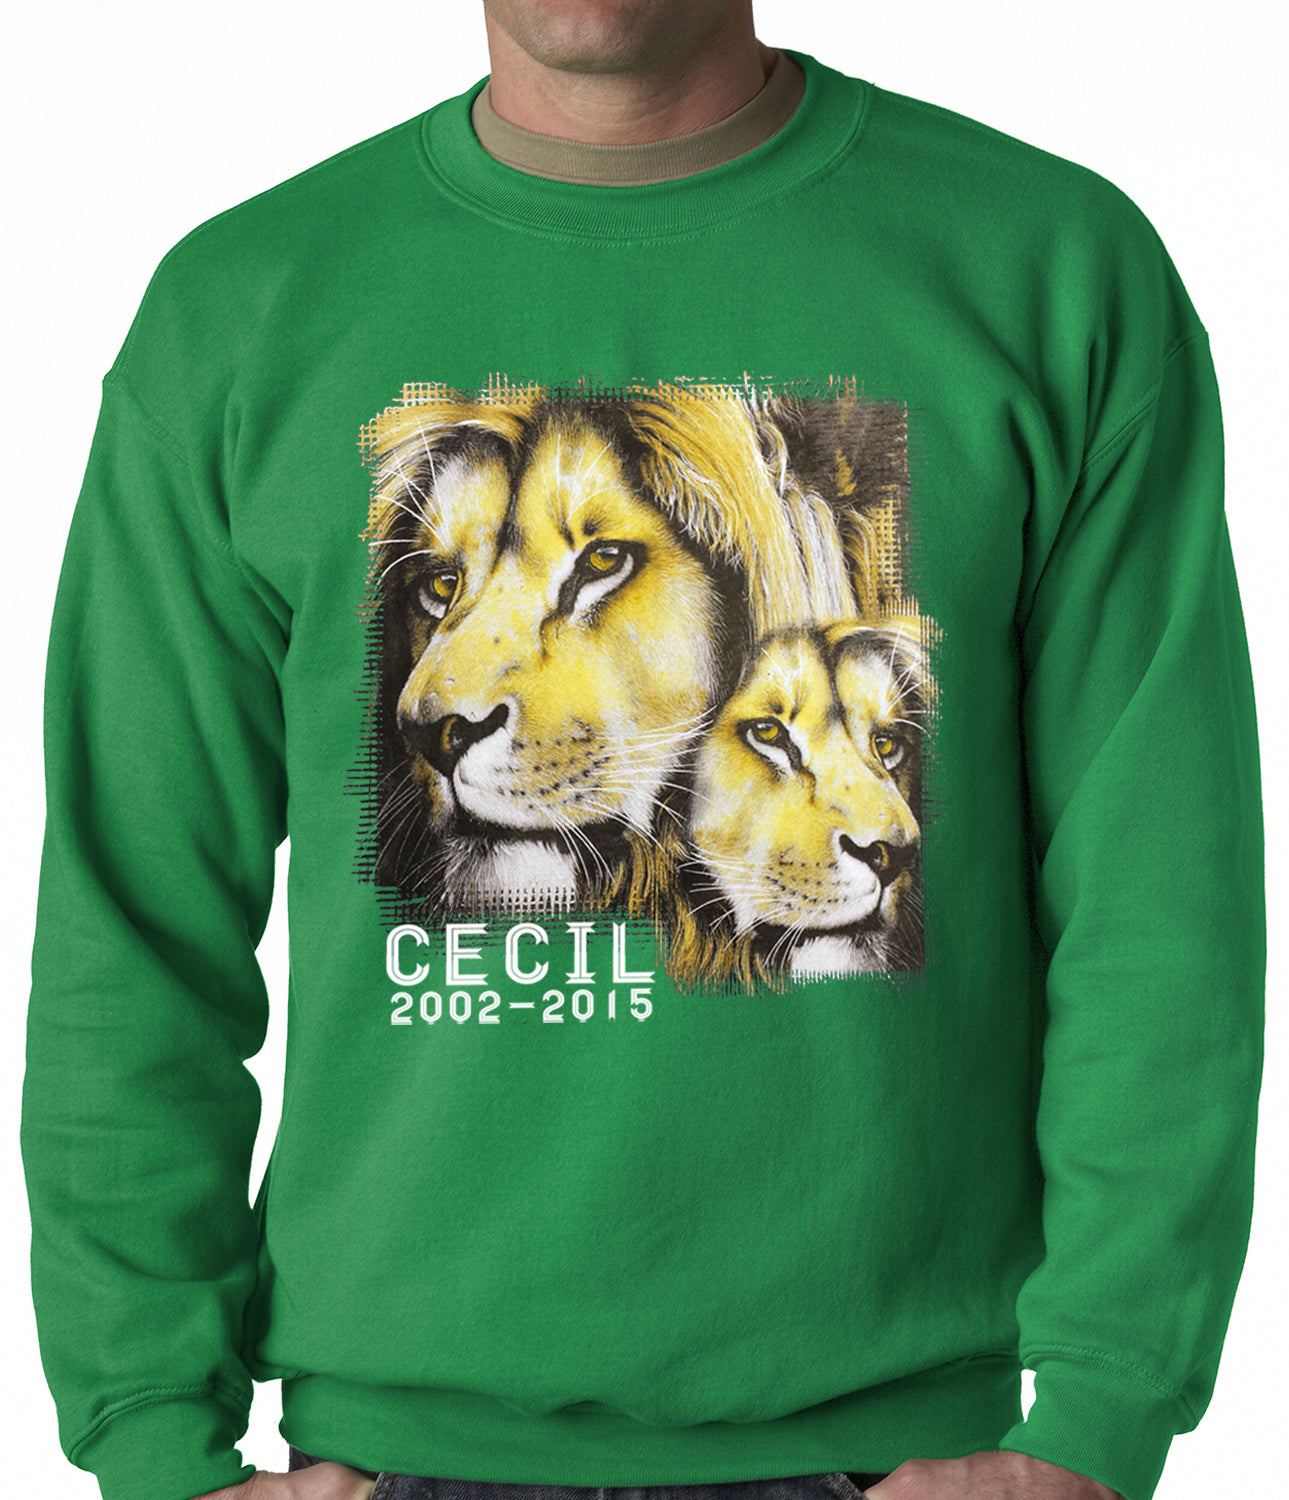 Cecil The Lion Tribute Shirt Adult Crewneck